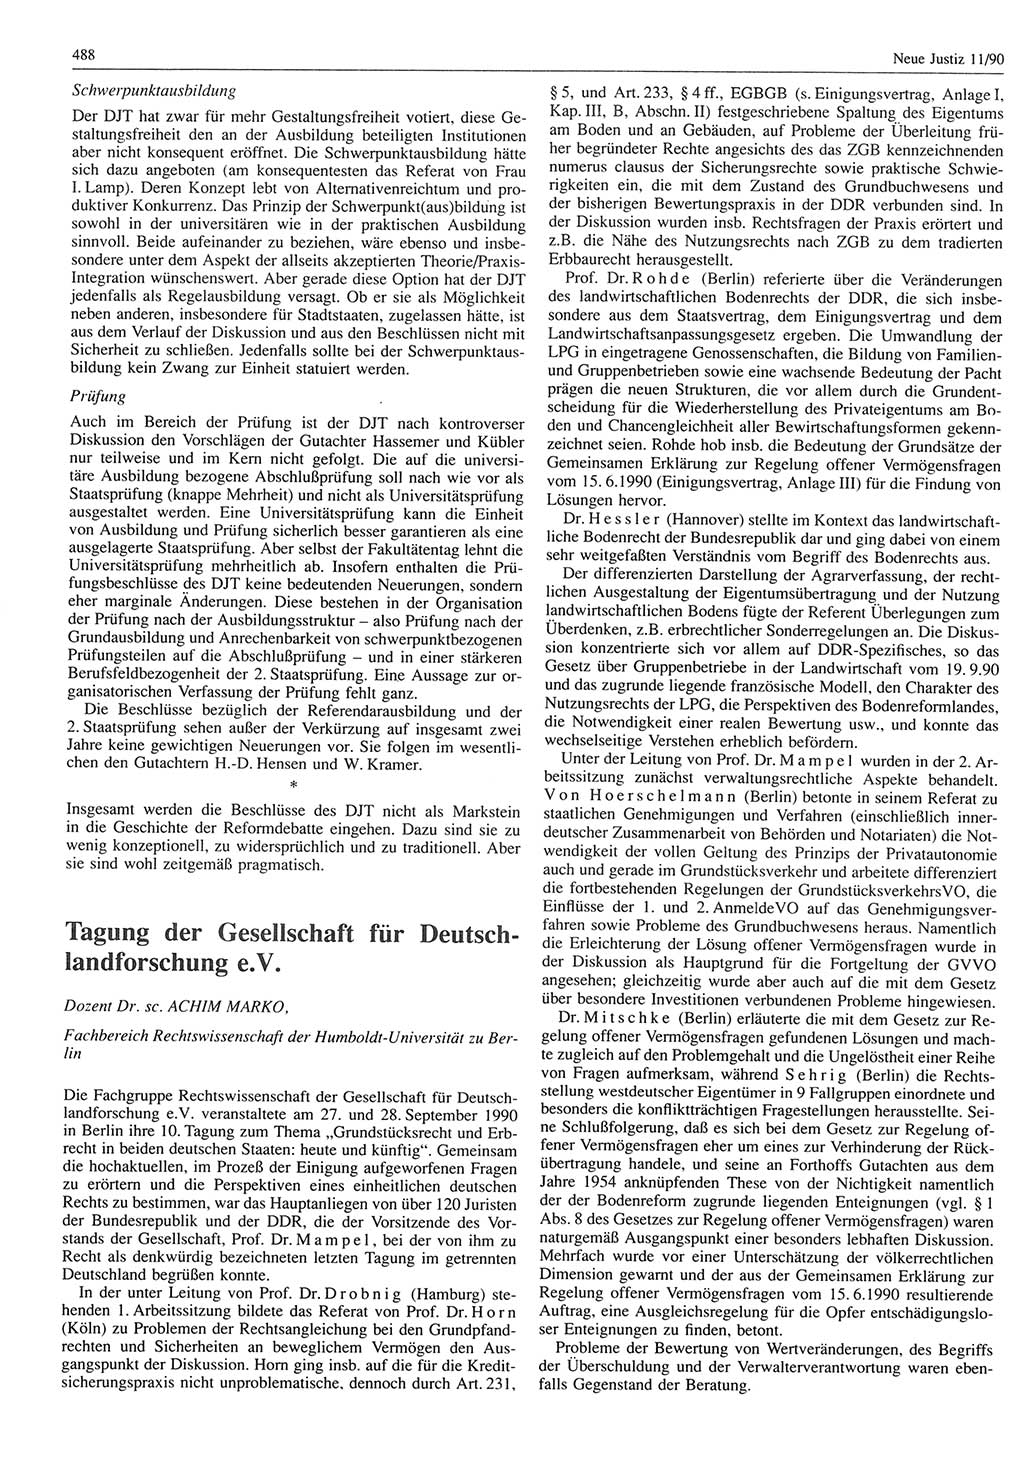 Neue Justiz (NJ), Zeitschrift für Rechtsetzung und Rechtsanwendung [Deutsche Demokratische Republik (DDR)], 44. Jahrgang 1990, Seite 488 (NJ DDR 1990, S. 488)